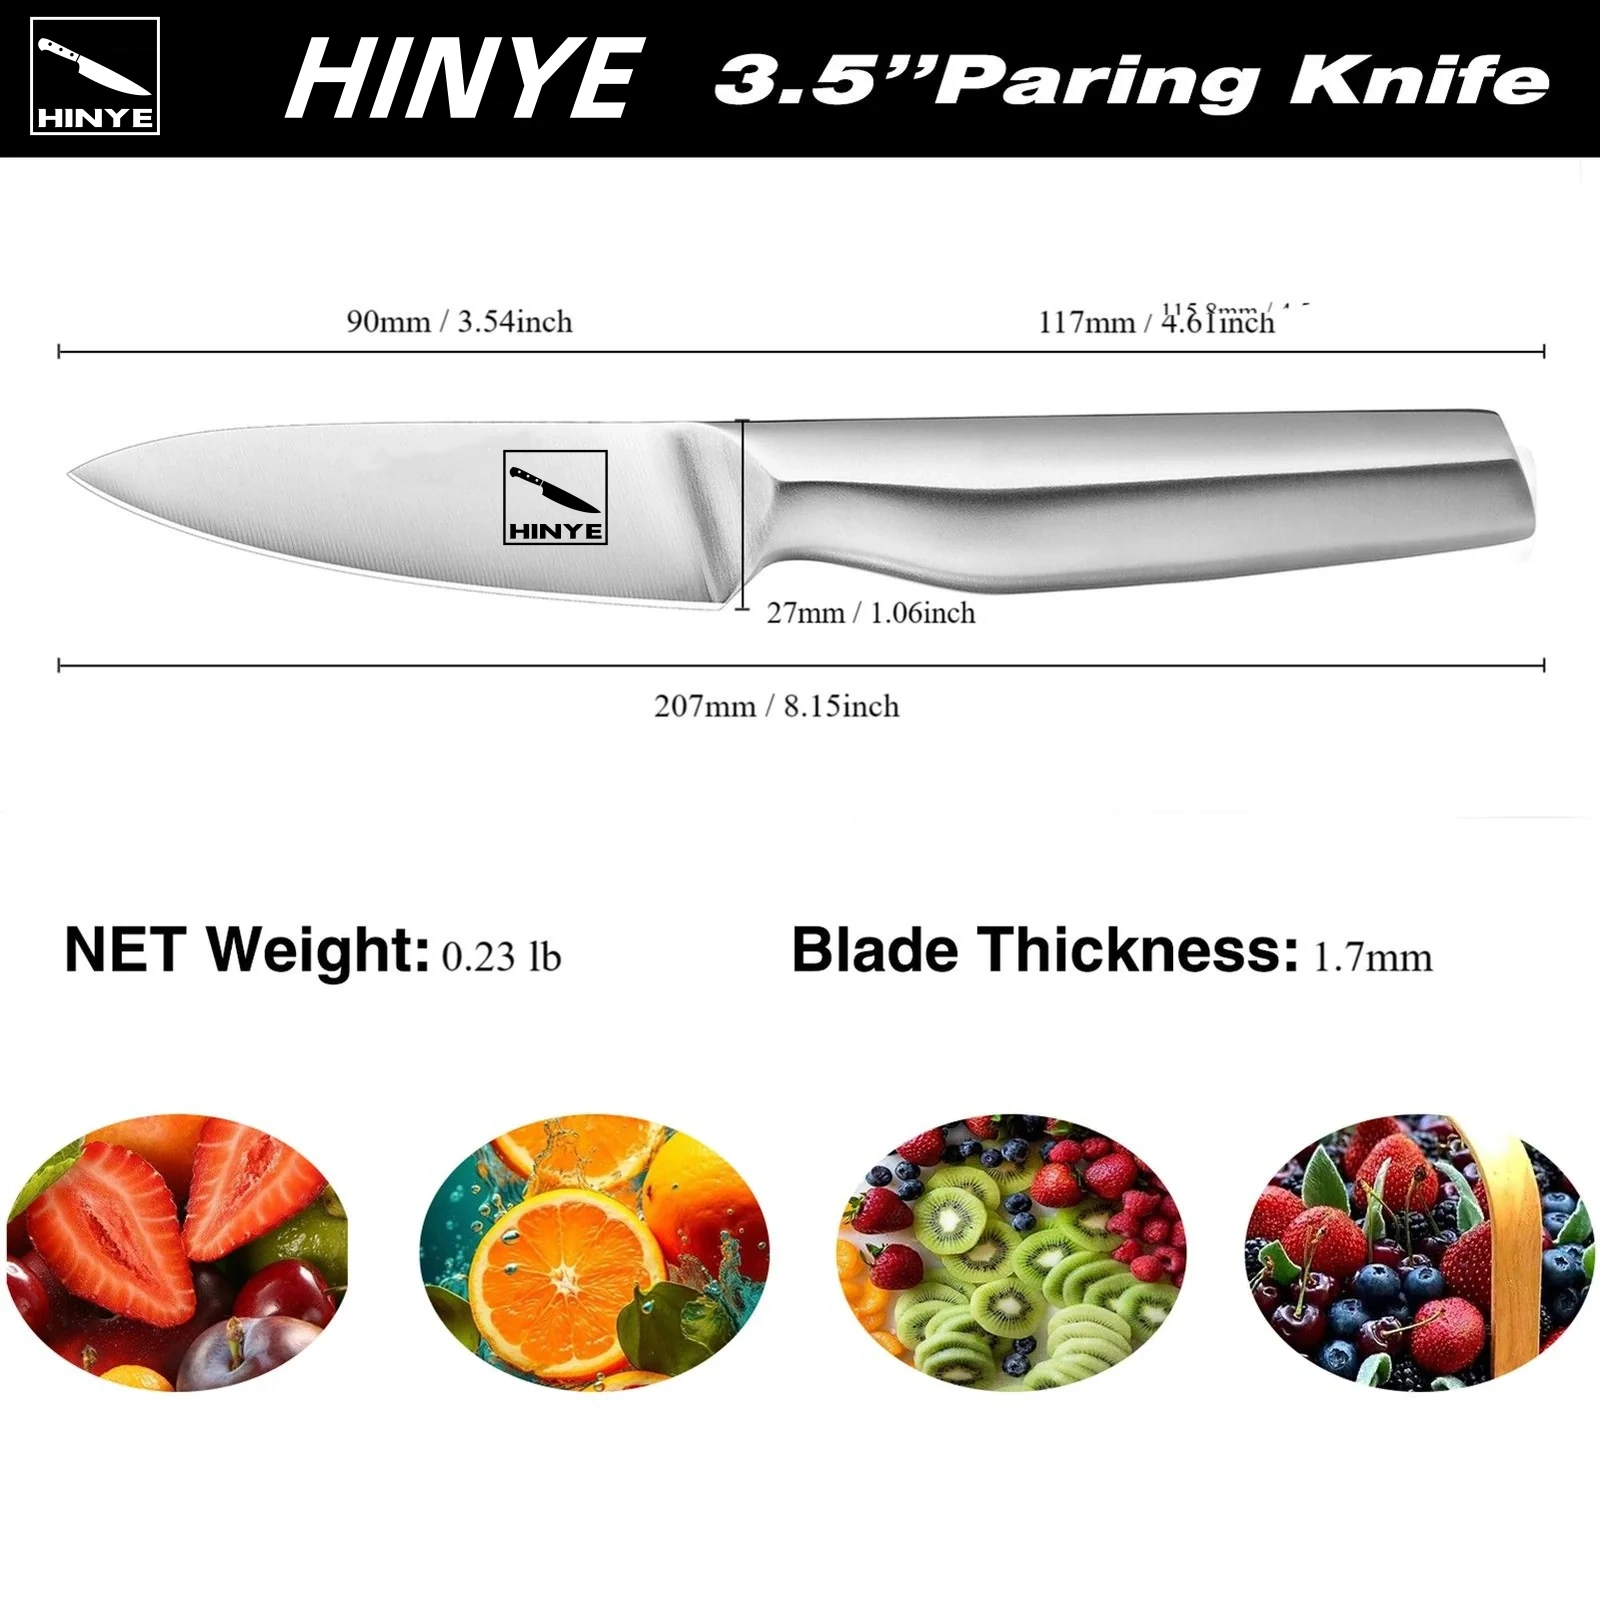 Hinye-Contour 3.5" Paring